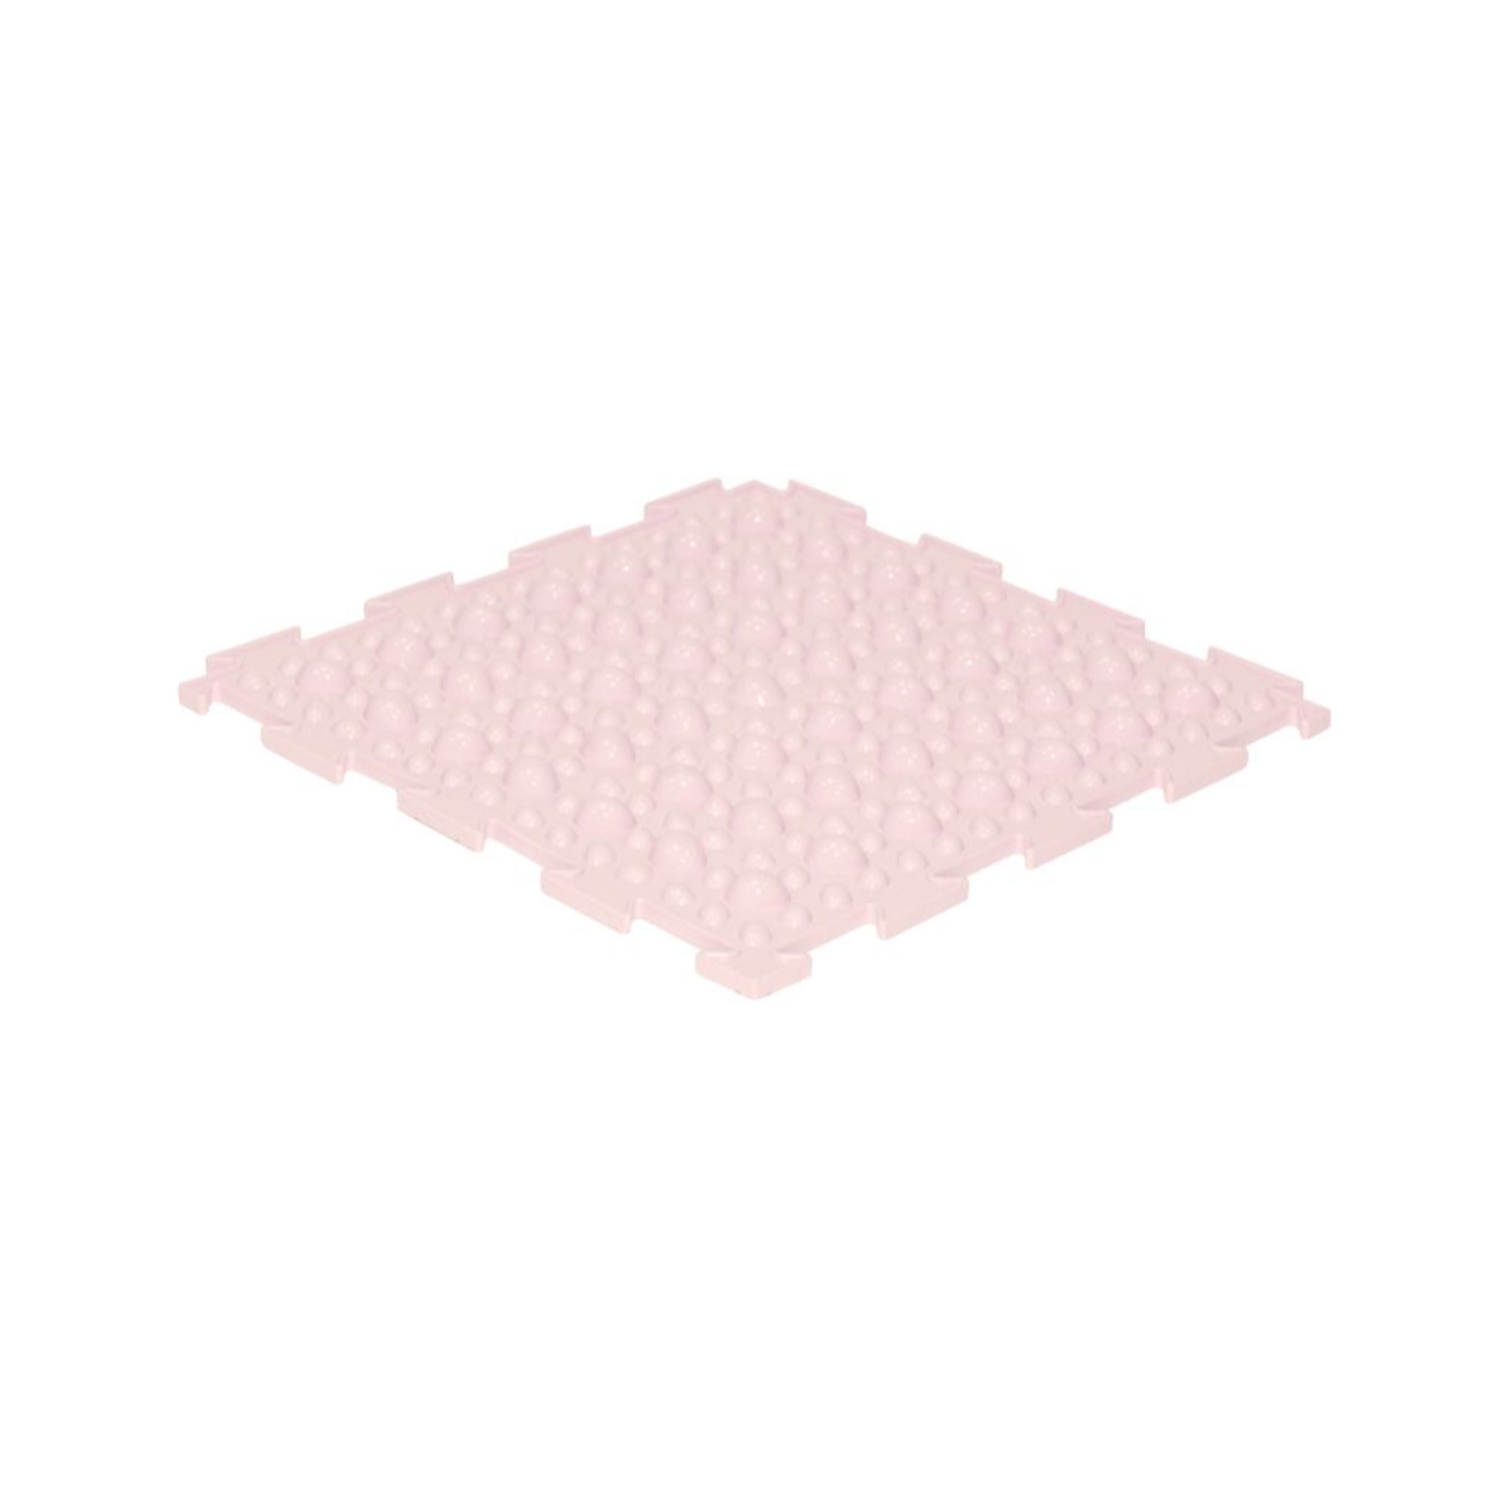 Массажный детский коврик пазл Ортодон развивающий игровой Камешки мягкий розовый 1 пазл - фото 1